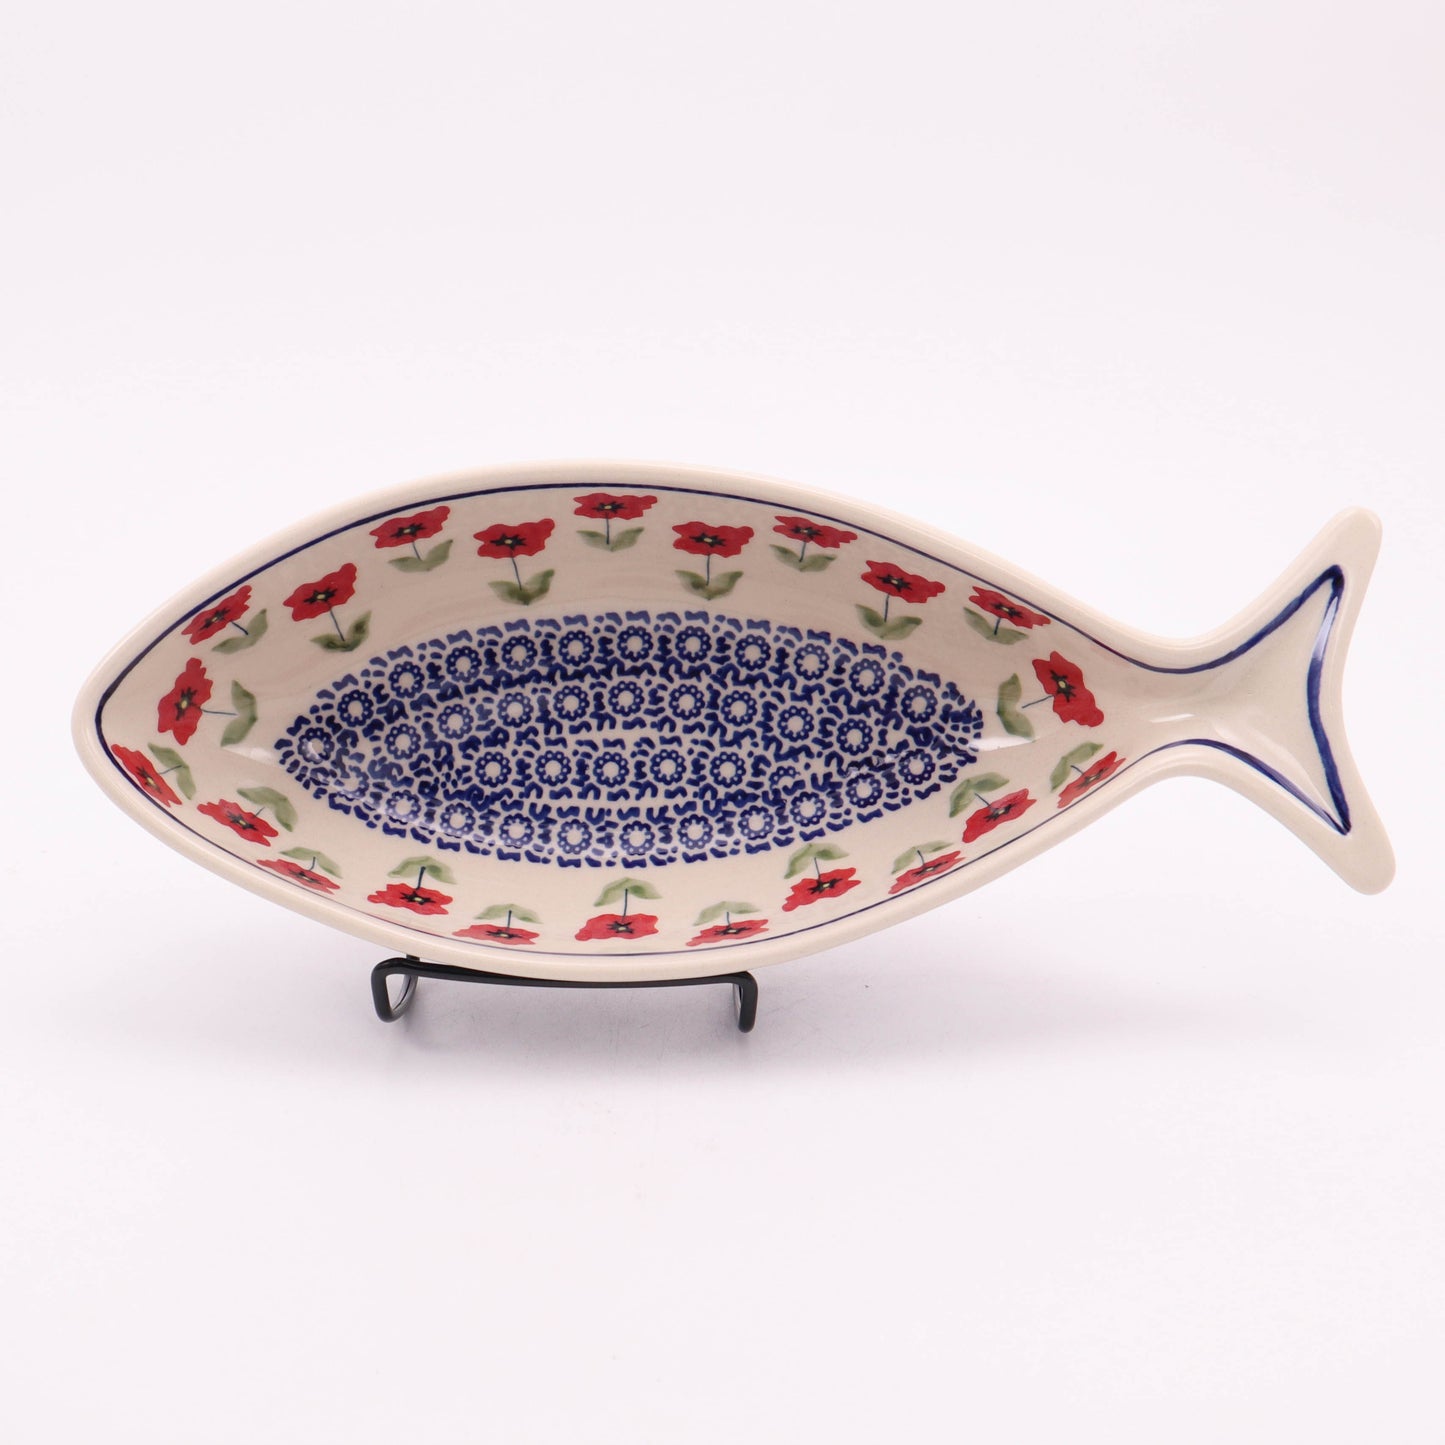 12"x5" Fish Bowl. Pattern: Perky Poppy